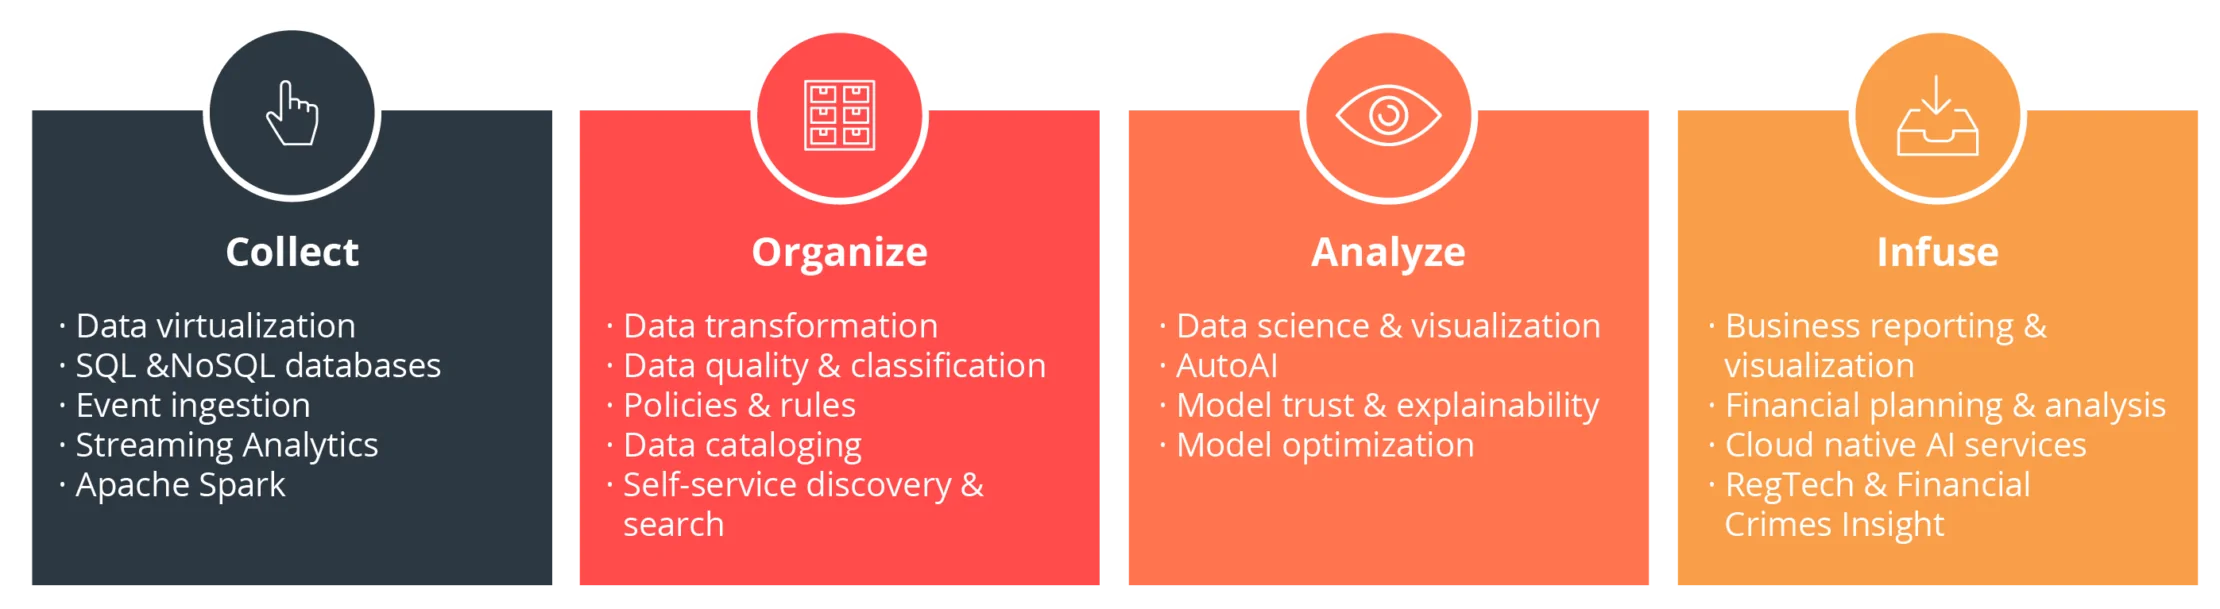 Die vier Phasen der Datenanalyse mithilfe von Machine Learning und Künstlicher Intelligenz im Überblick (Quelle: IBM)